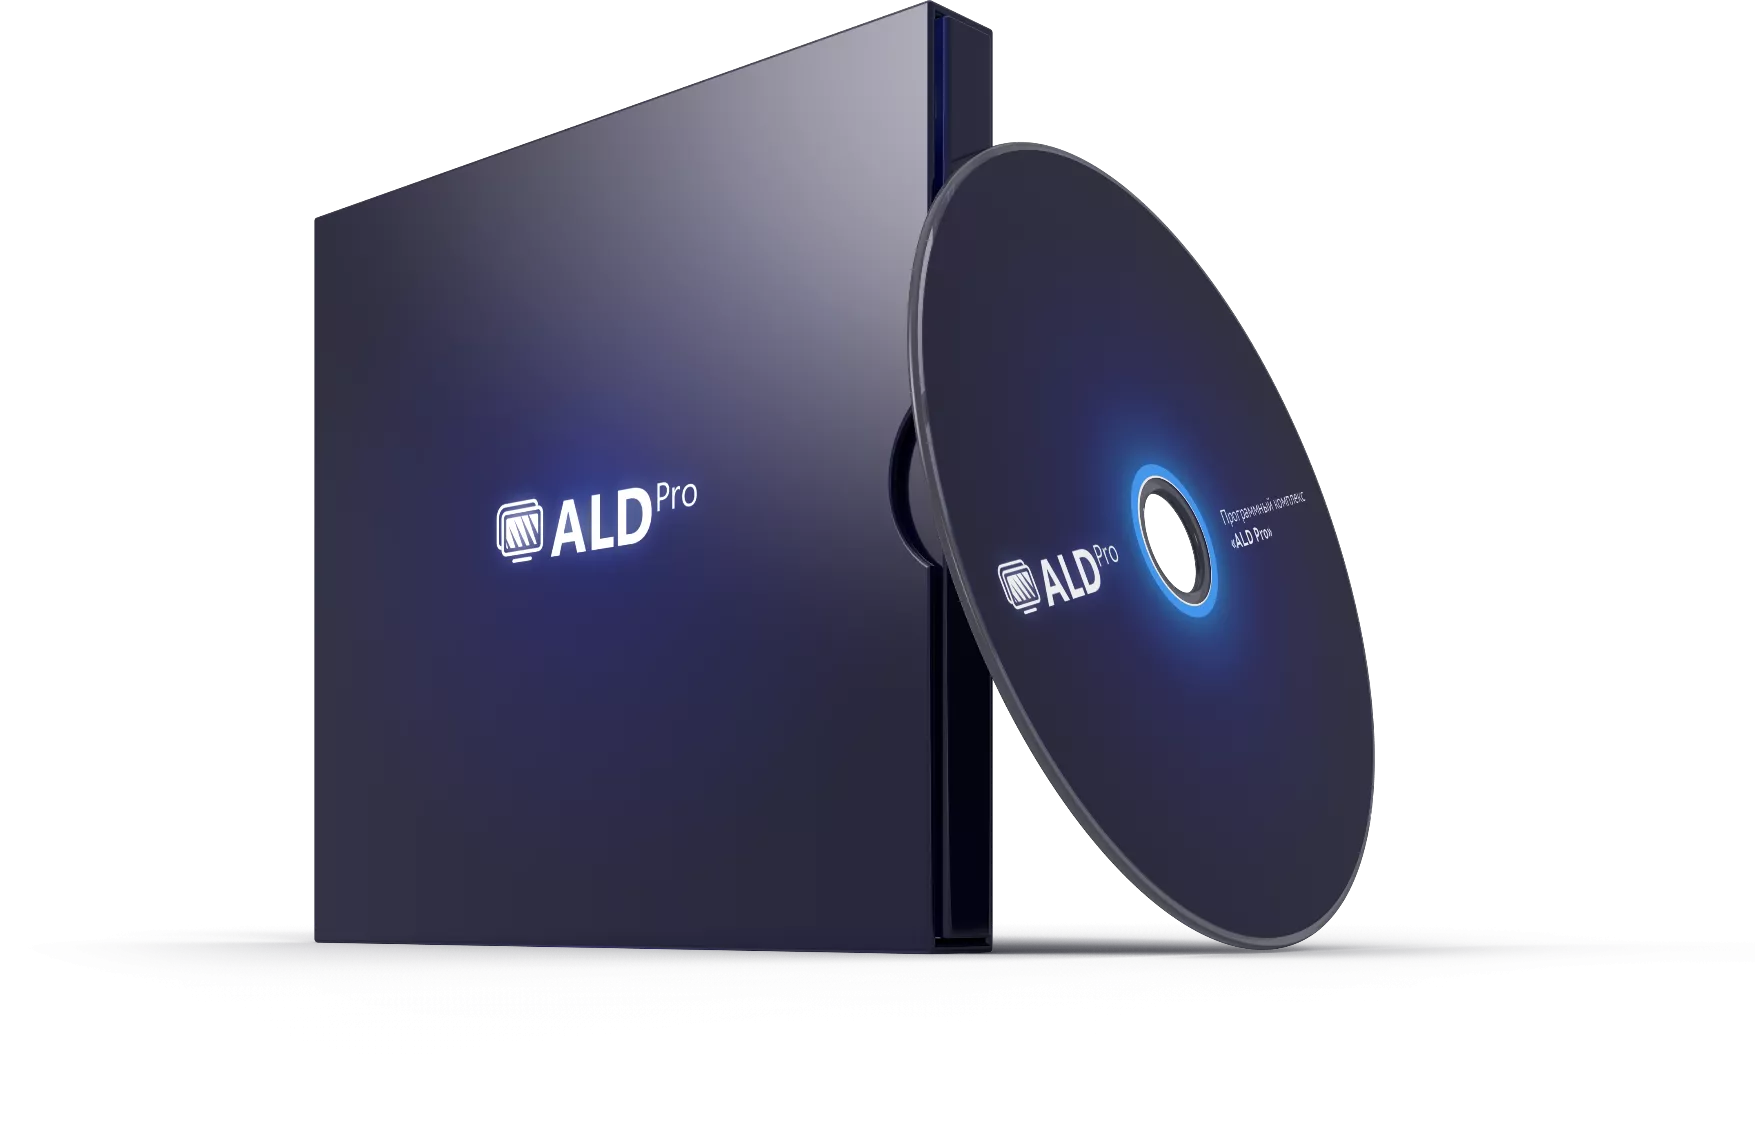 ALD Pro РДЦП.10101-01 «Astra Linux Special Edition» (ФСТЭК) на 8 устройствах, BOX, сроком на 12 мес., с включенной ТП "Привилегированная" на 12 мес.